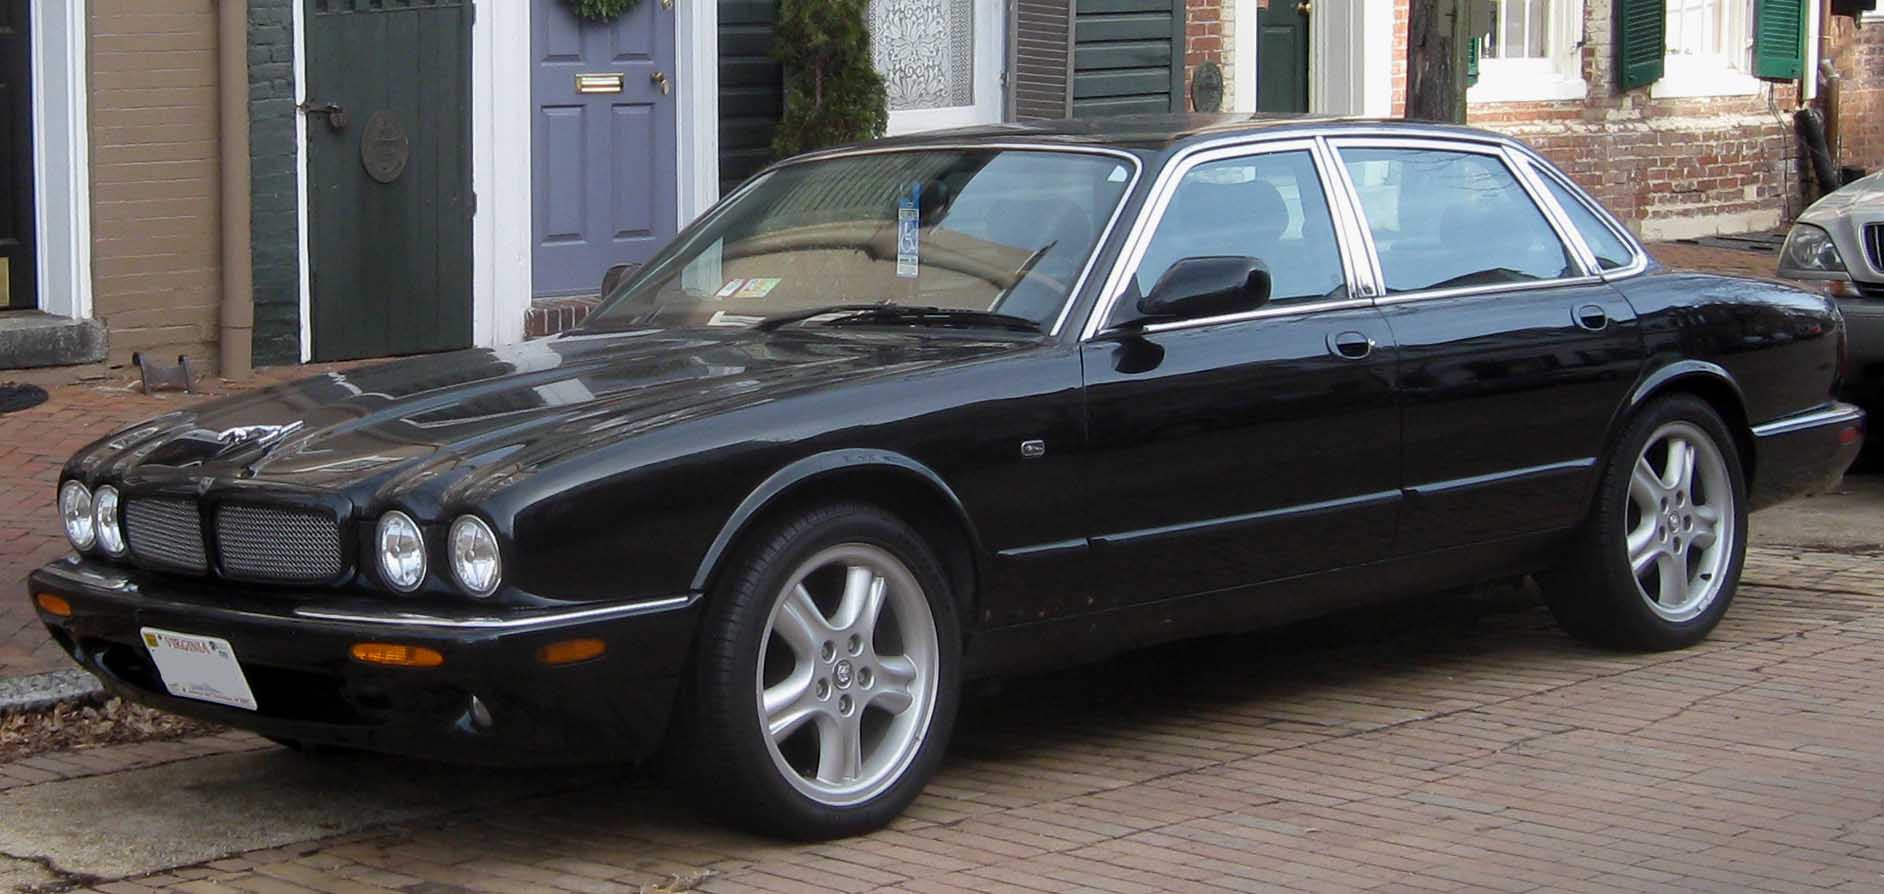 Jaguar XJ (X308) - Wikipedia